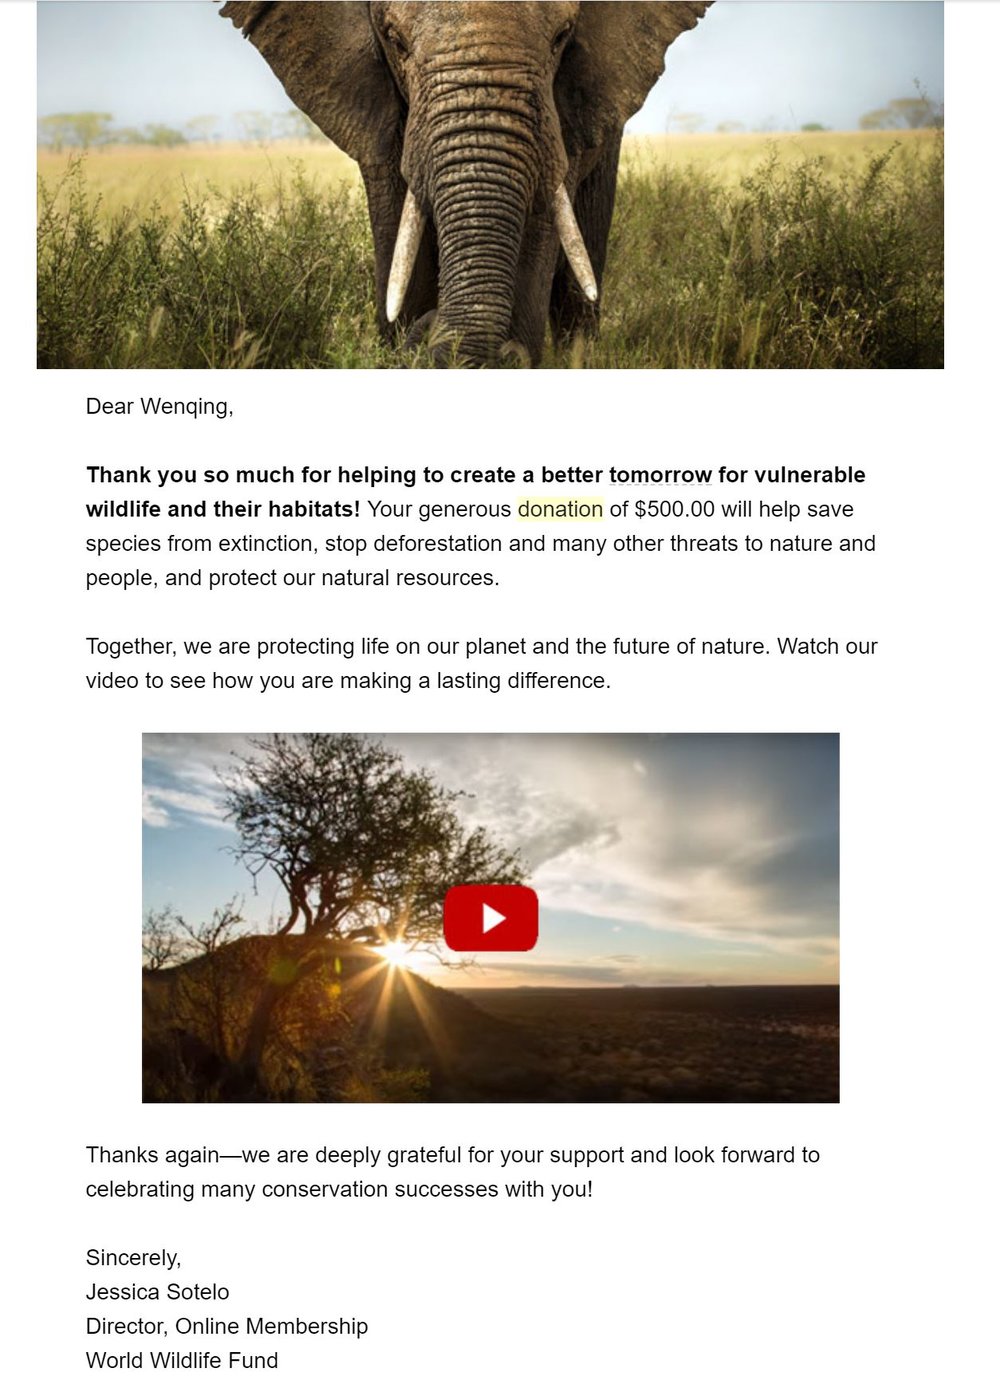 World Wildlife Fund 500 dollars.JPG